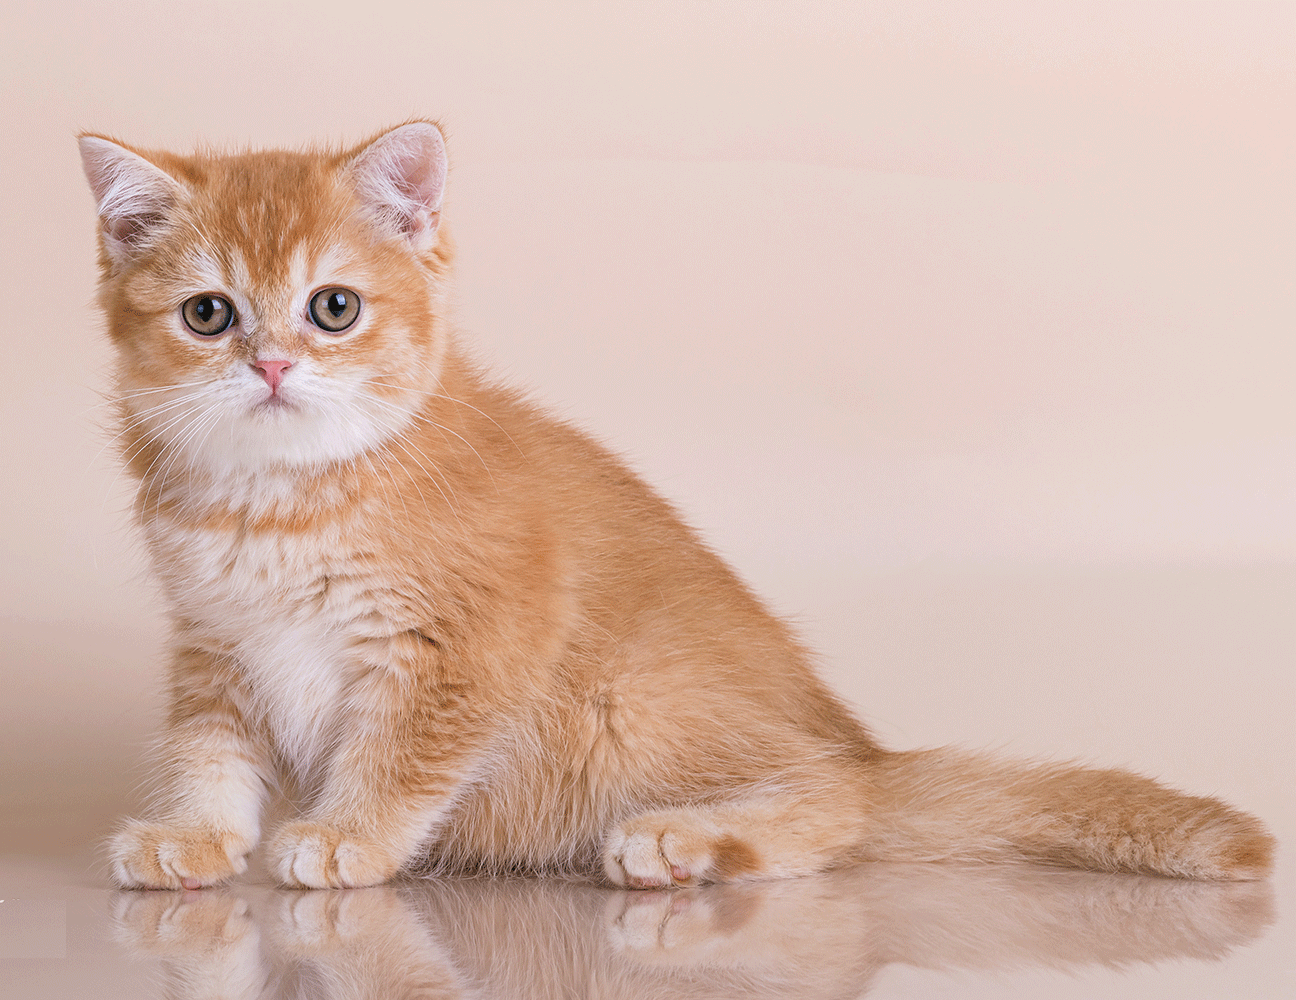 британсие котята спб, рыжий британский котенок спб, окрас d25, питомник кошек спб